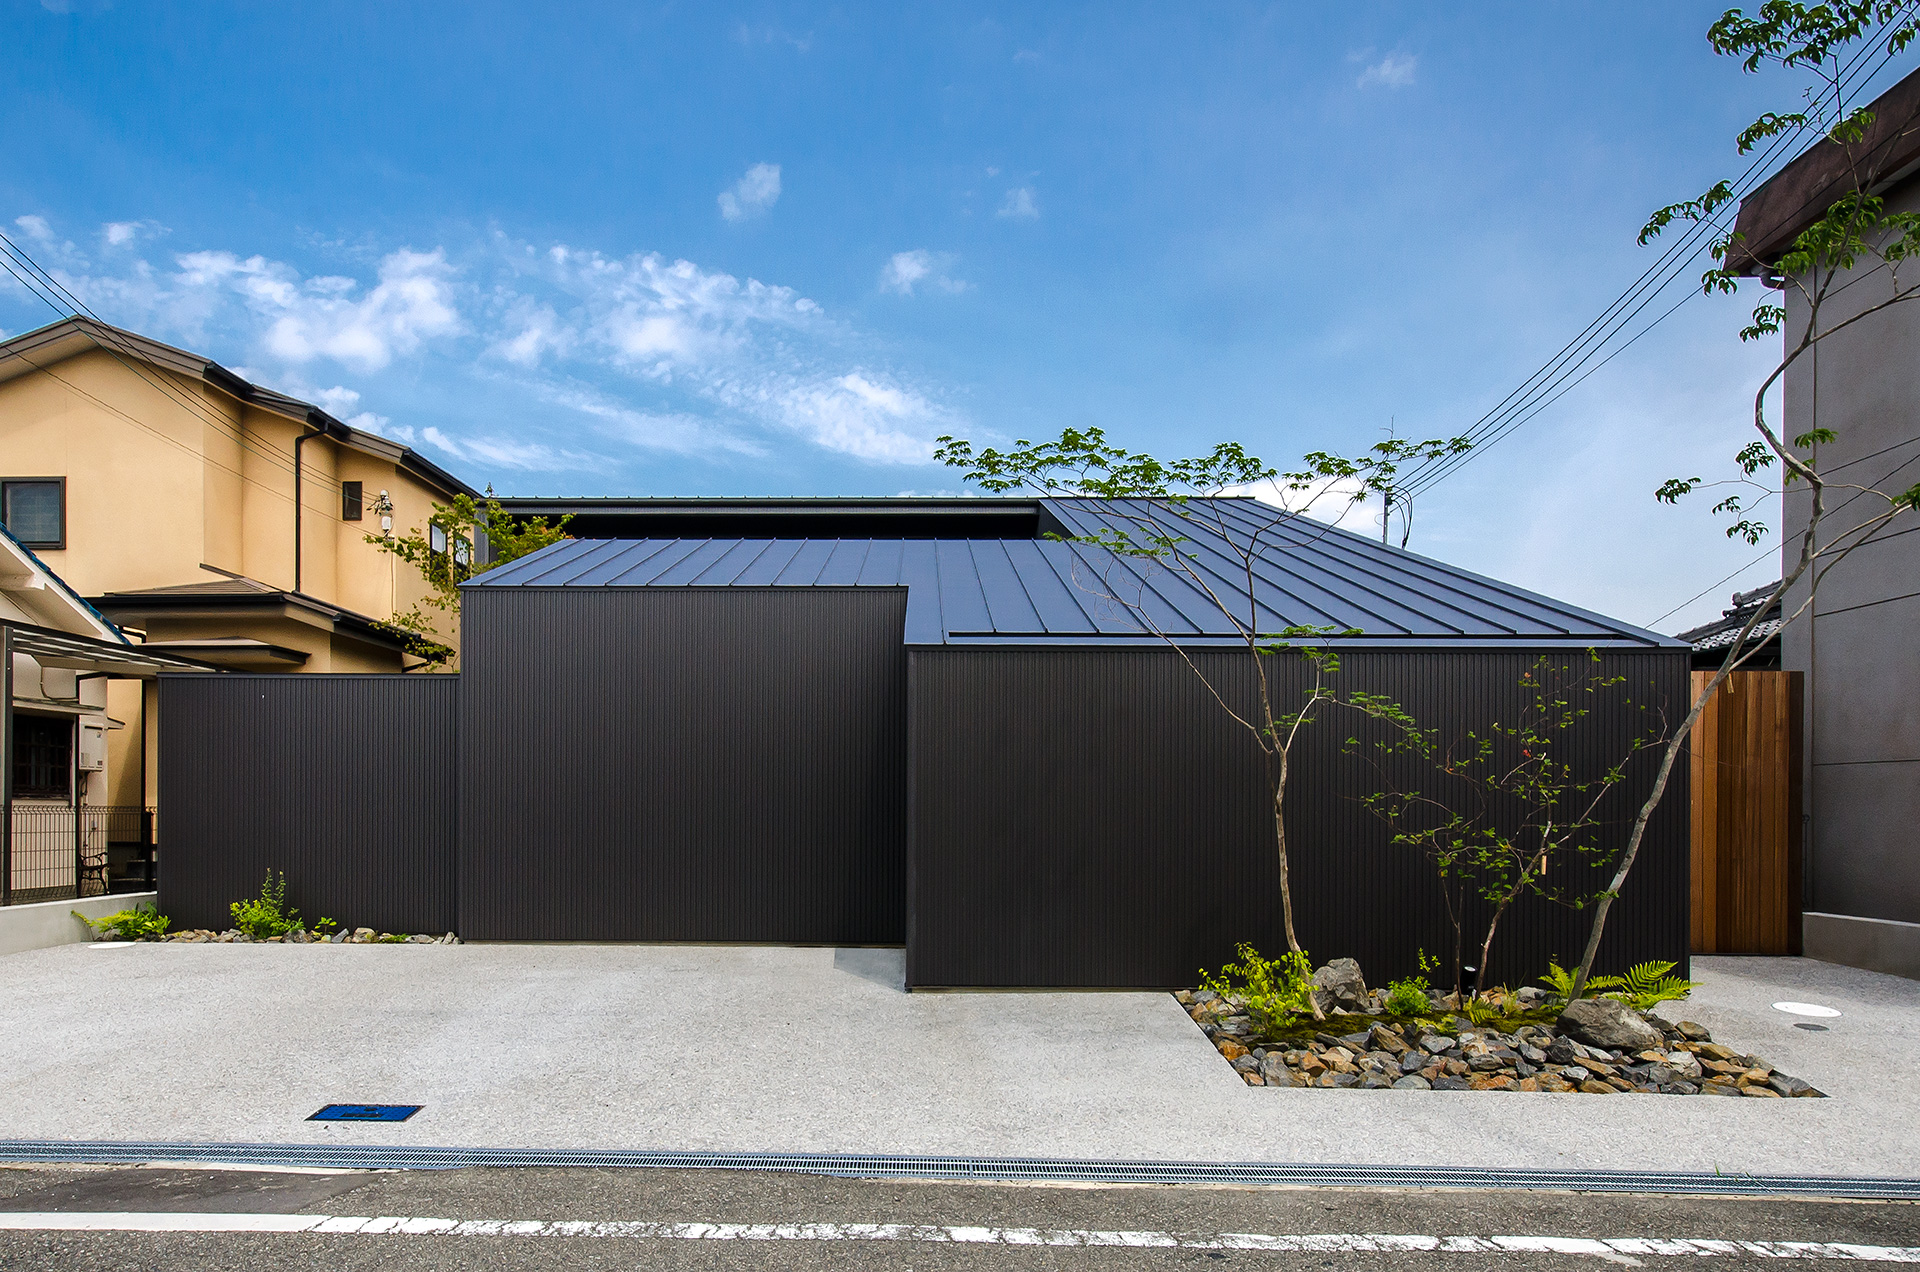 大阪府内に建つ都市型コートハウス,中庭のある住宅,ガルバリウム鋼板の外観